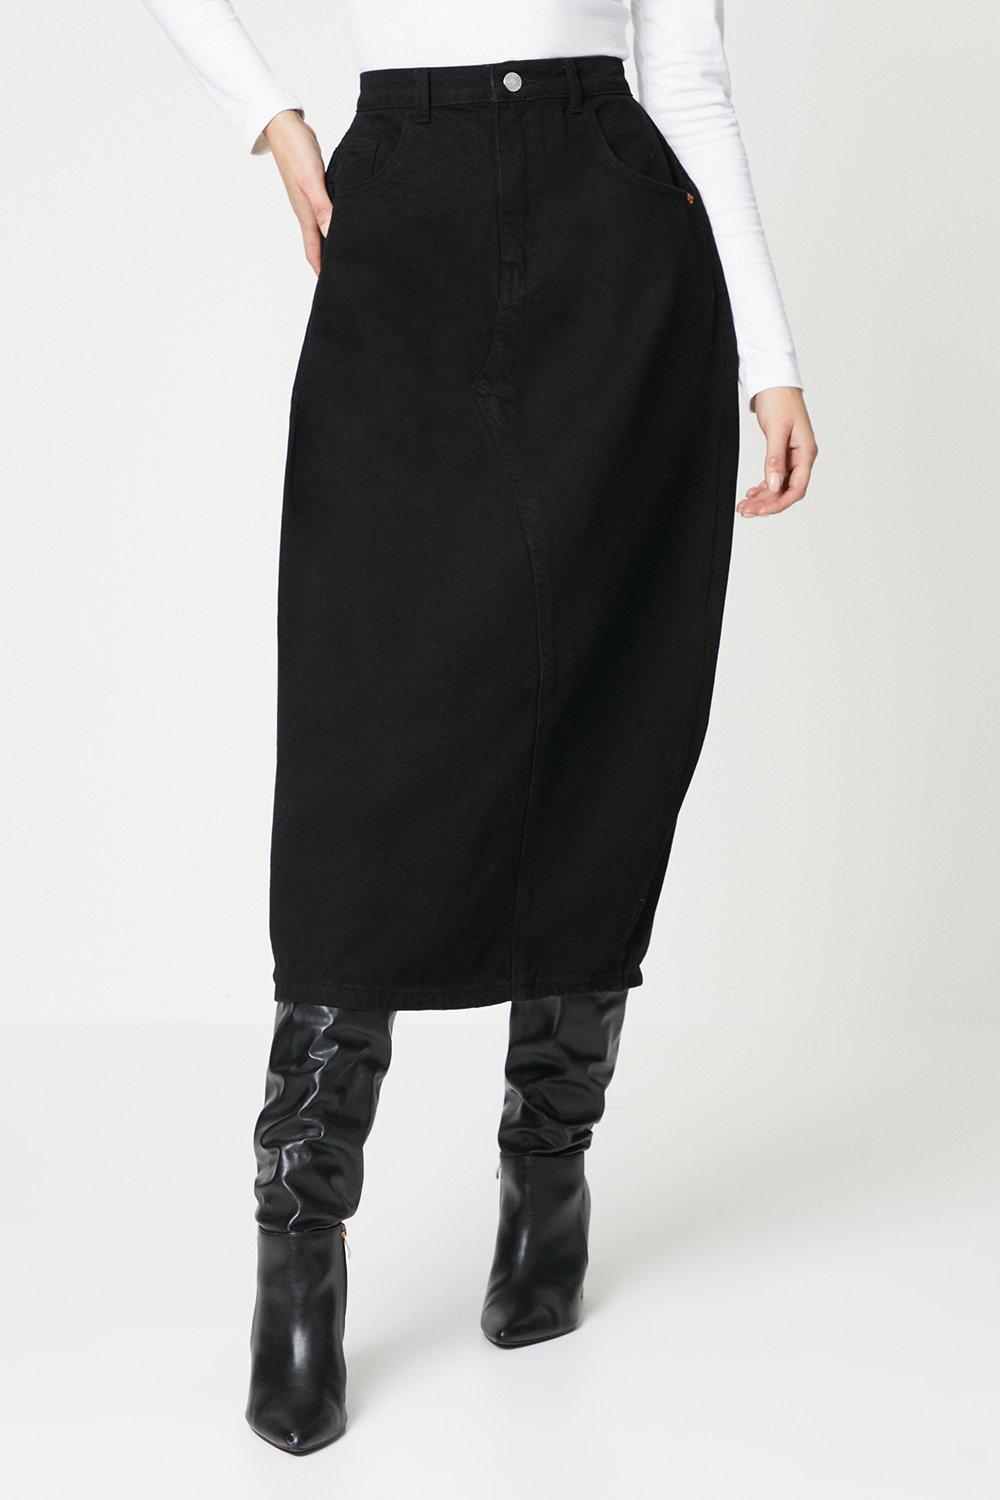 Длинная юбка со швом Dorothy Perkins, черный офисная юбка плотная элегантная юбка теплая универсальная модная трапециевидная макси зимняя длинная юбка с высокой талией